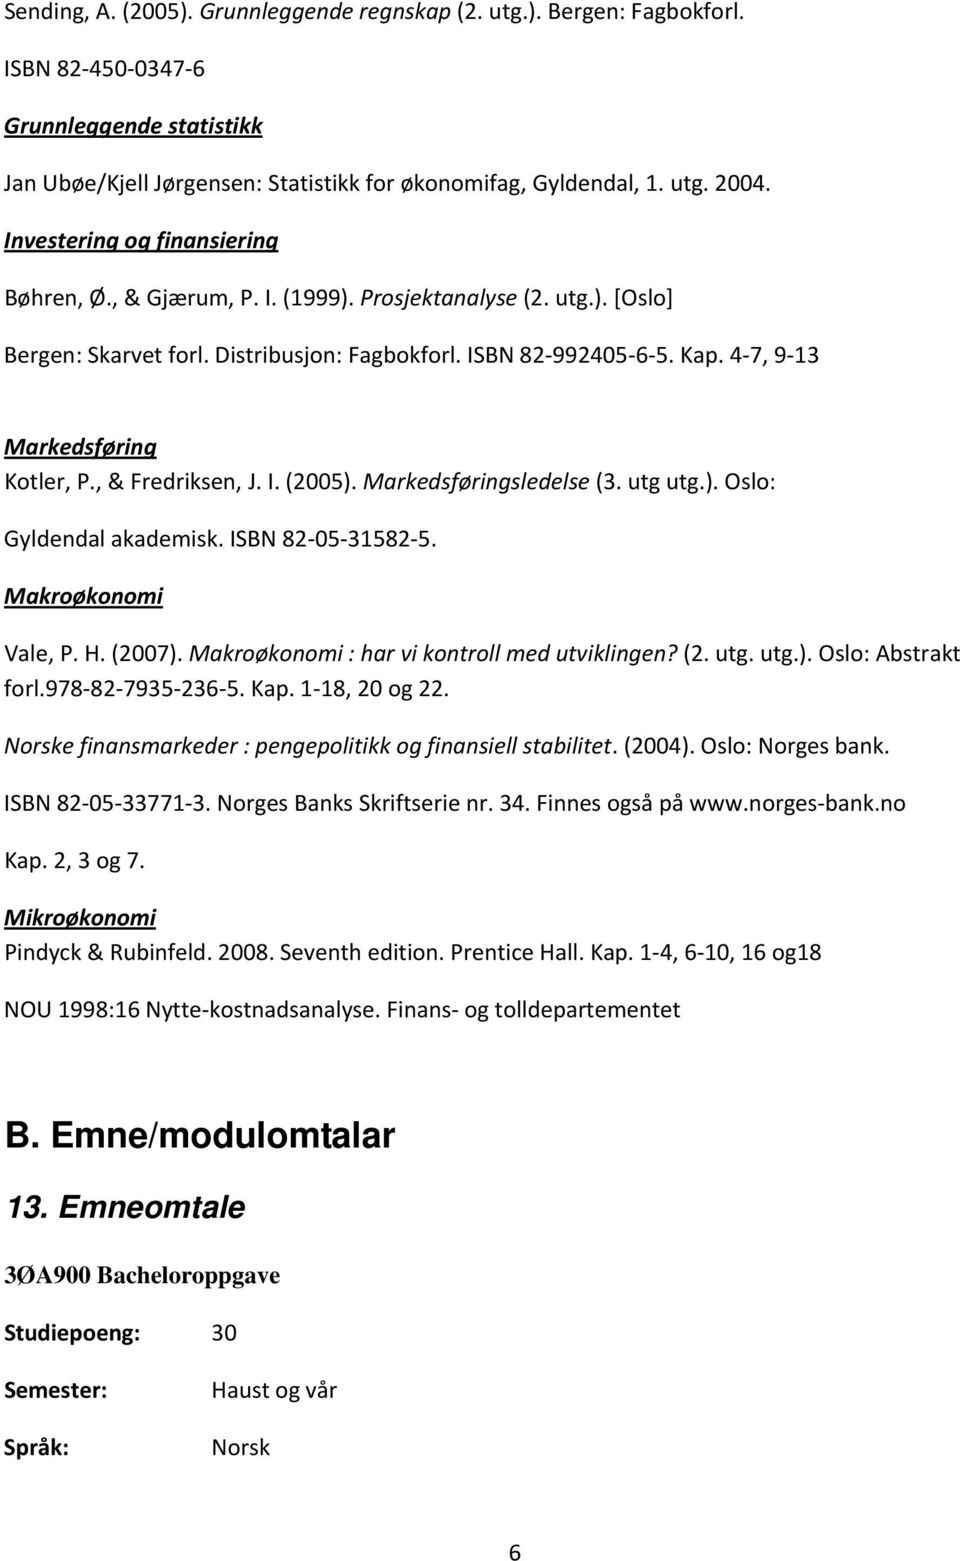 4 7, 9 13 Markedsføring Kotler, P., & Fredriksen, J. I. (2005). Markedsføringsledelse (3. utg utg.). Oslo: Gyldendal akademisk. ISBN 82 05 31582 5. Makroøkonomi Vale, P. H. (2007).